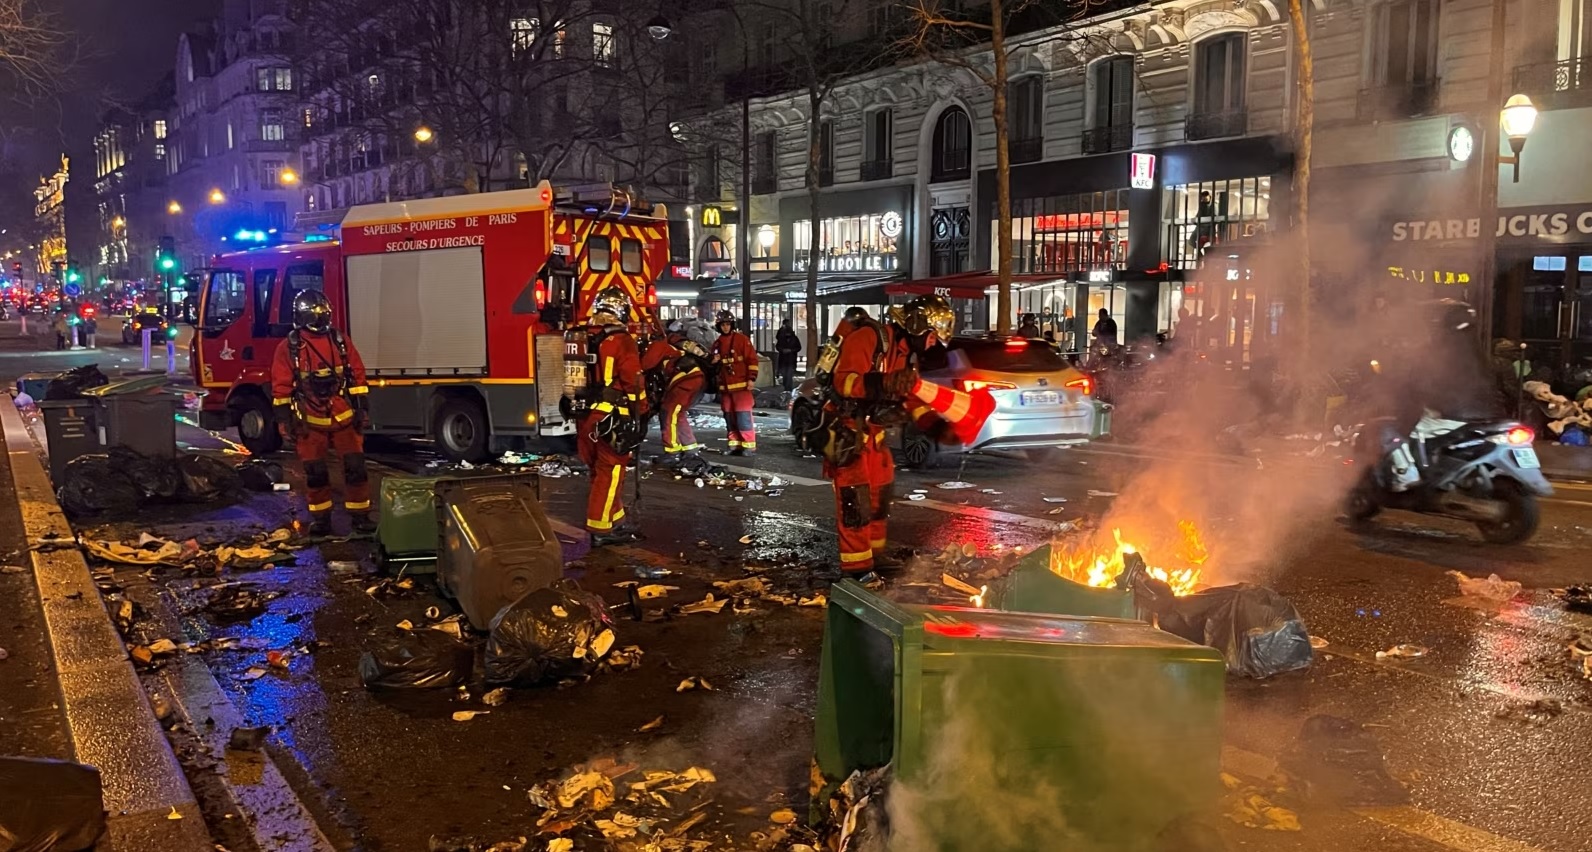 Zjarrfikësit francez duke shuar zjarrin e vënë nga protestuesit në Paris, më 20 mars 2023. Foto: Reuters